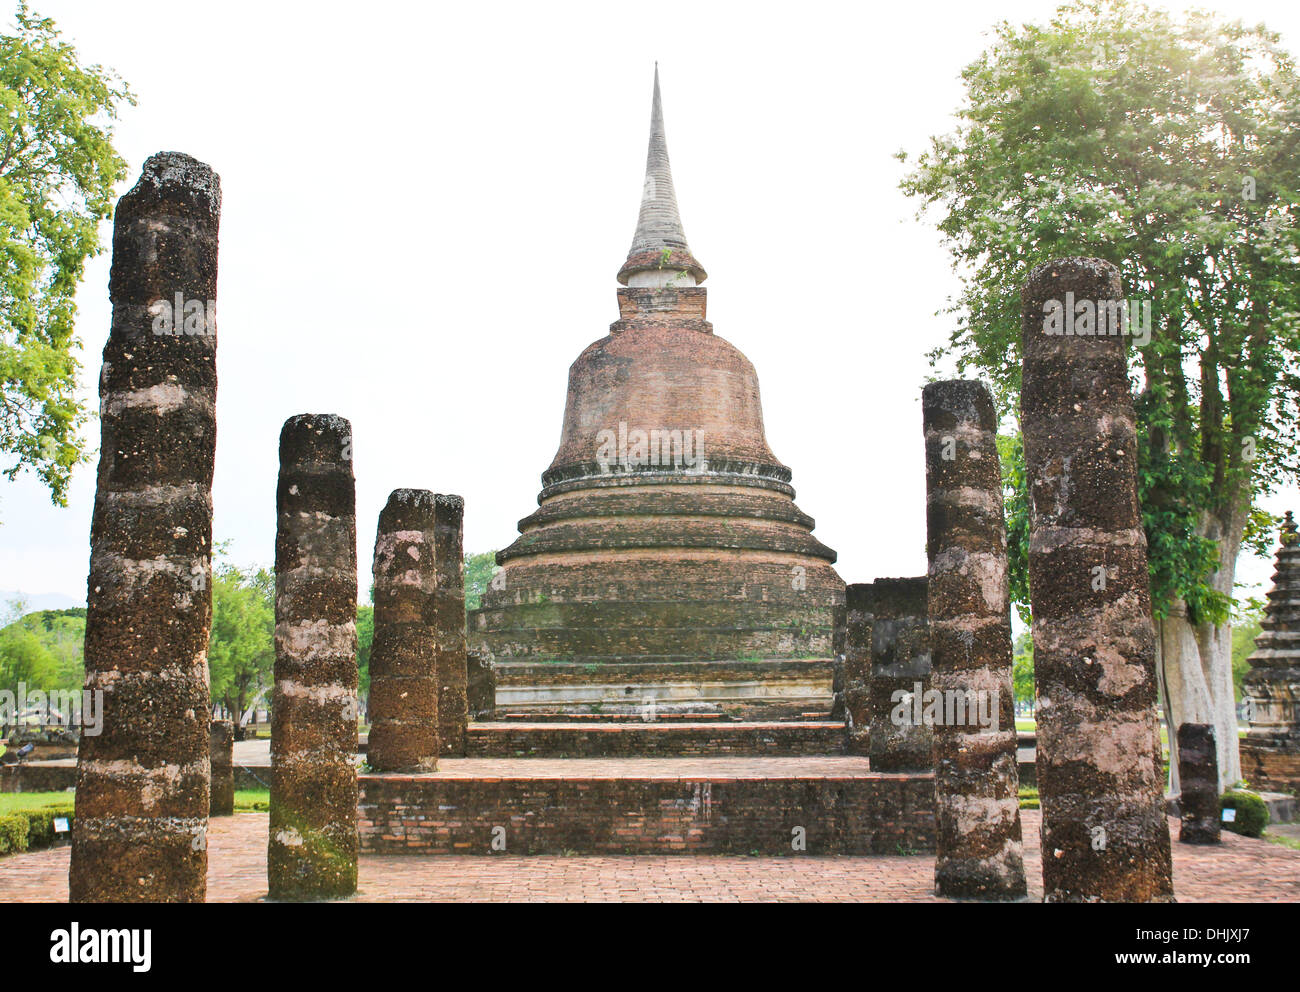 Wat Sa Si dans le parc historique de Sukhothai, Thaïlande Banque D'Images